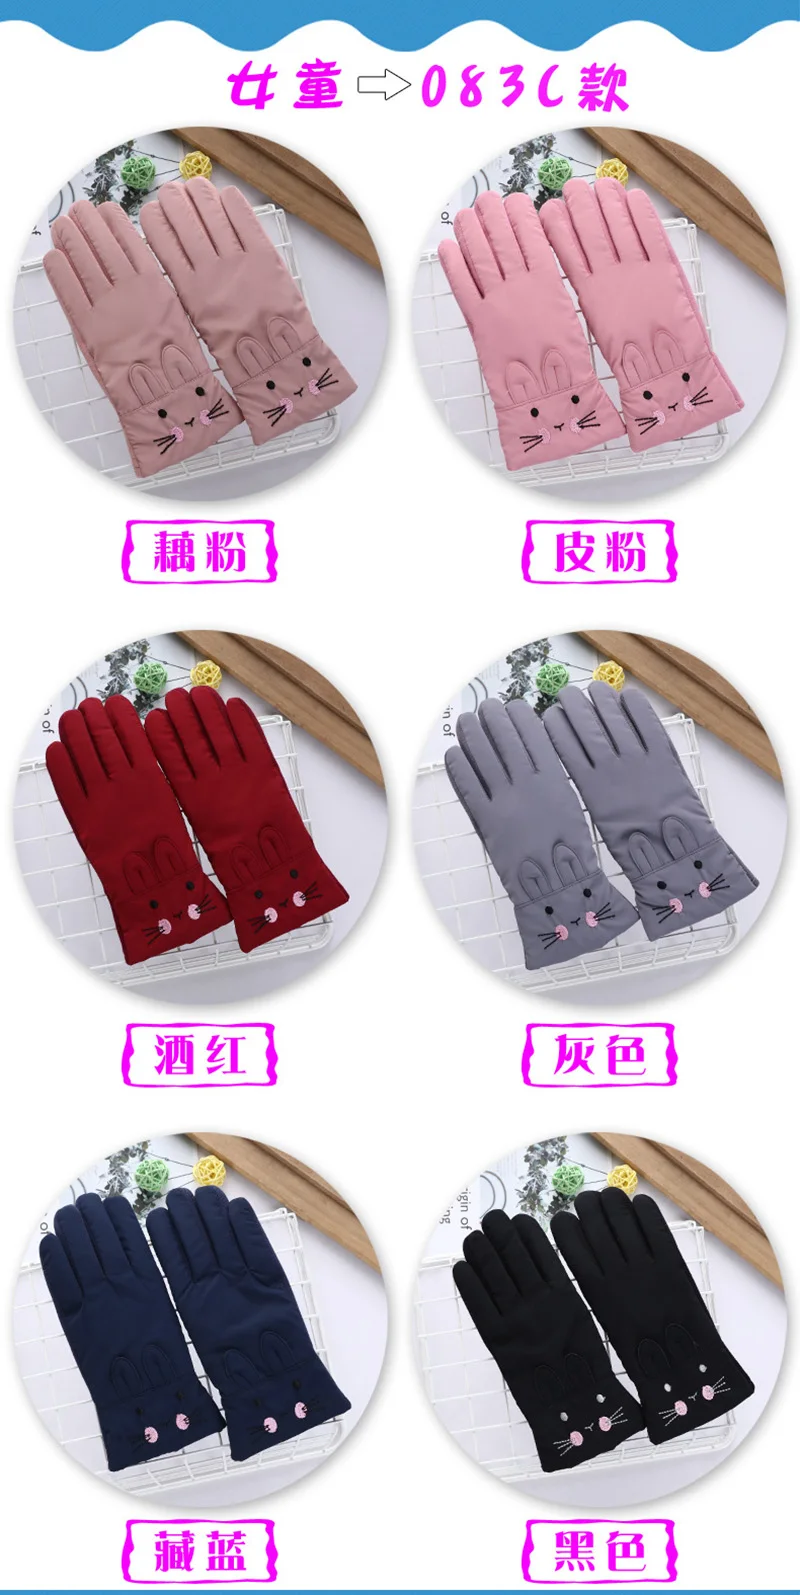 Студенческие перчатки 8-14 лет модные английские буквы зимние ветрозащитные водонепроницаемые толстые теплые перчатки для верховой езды D57